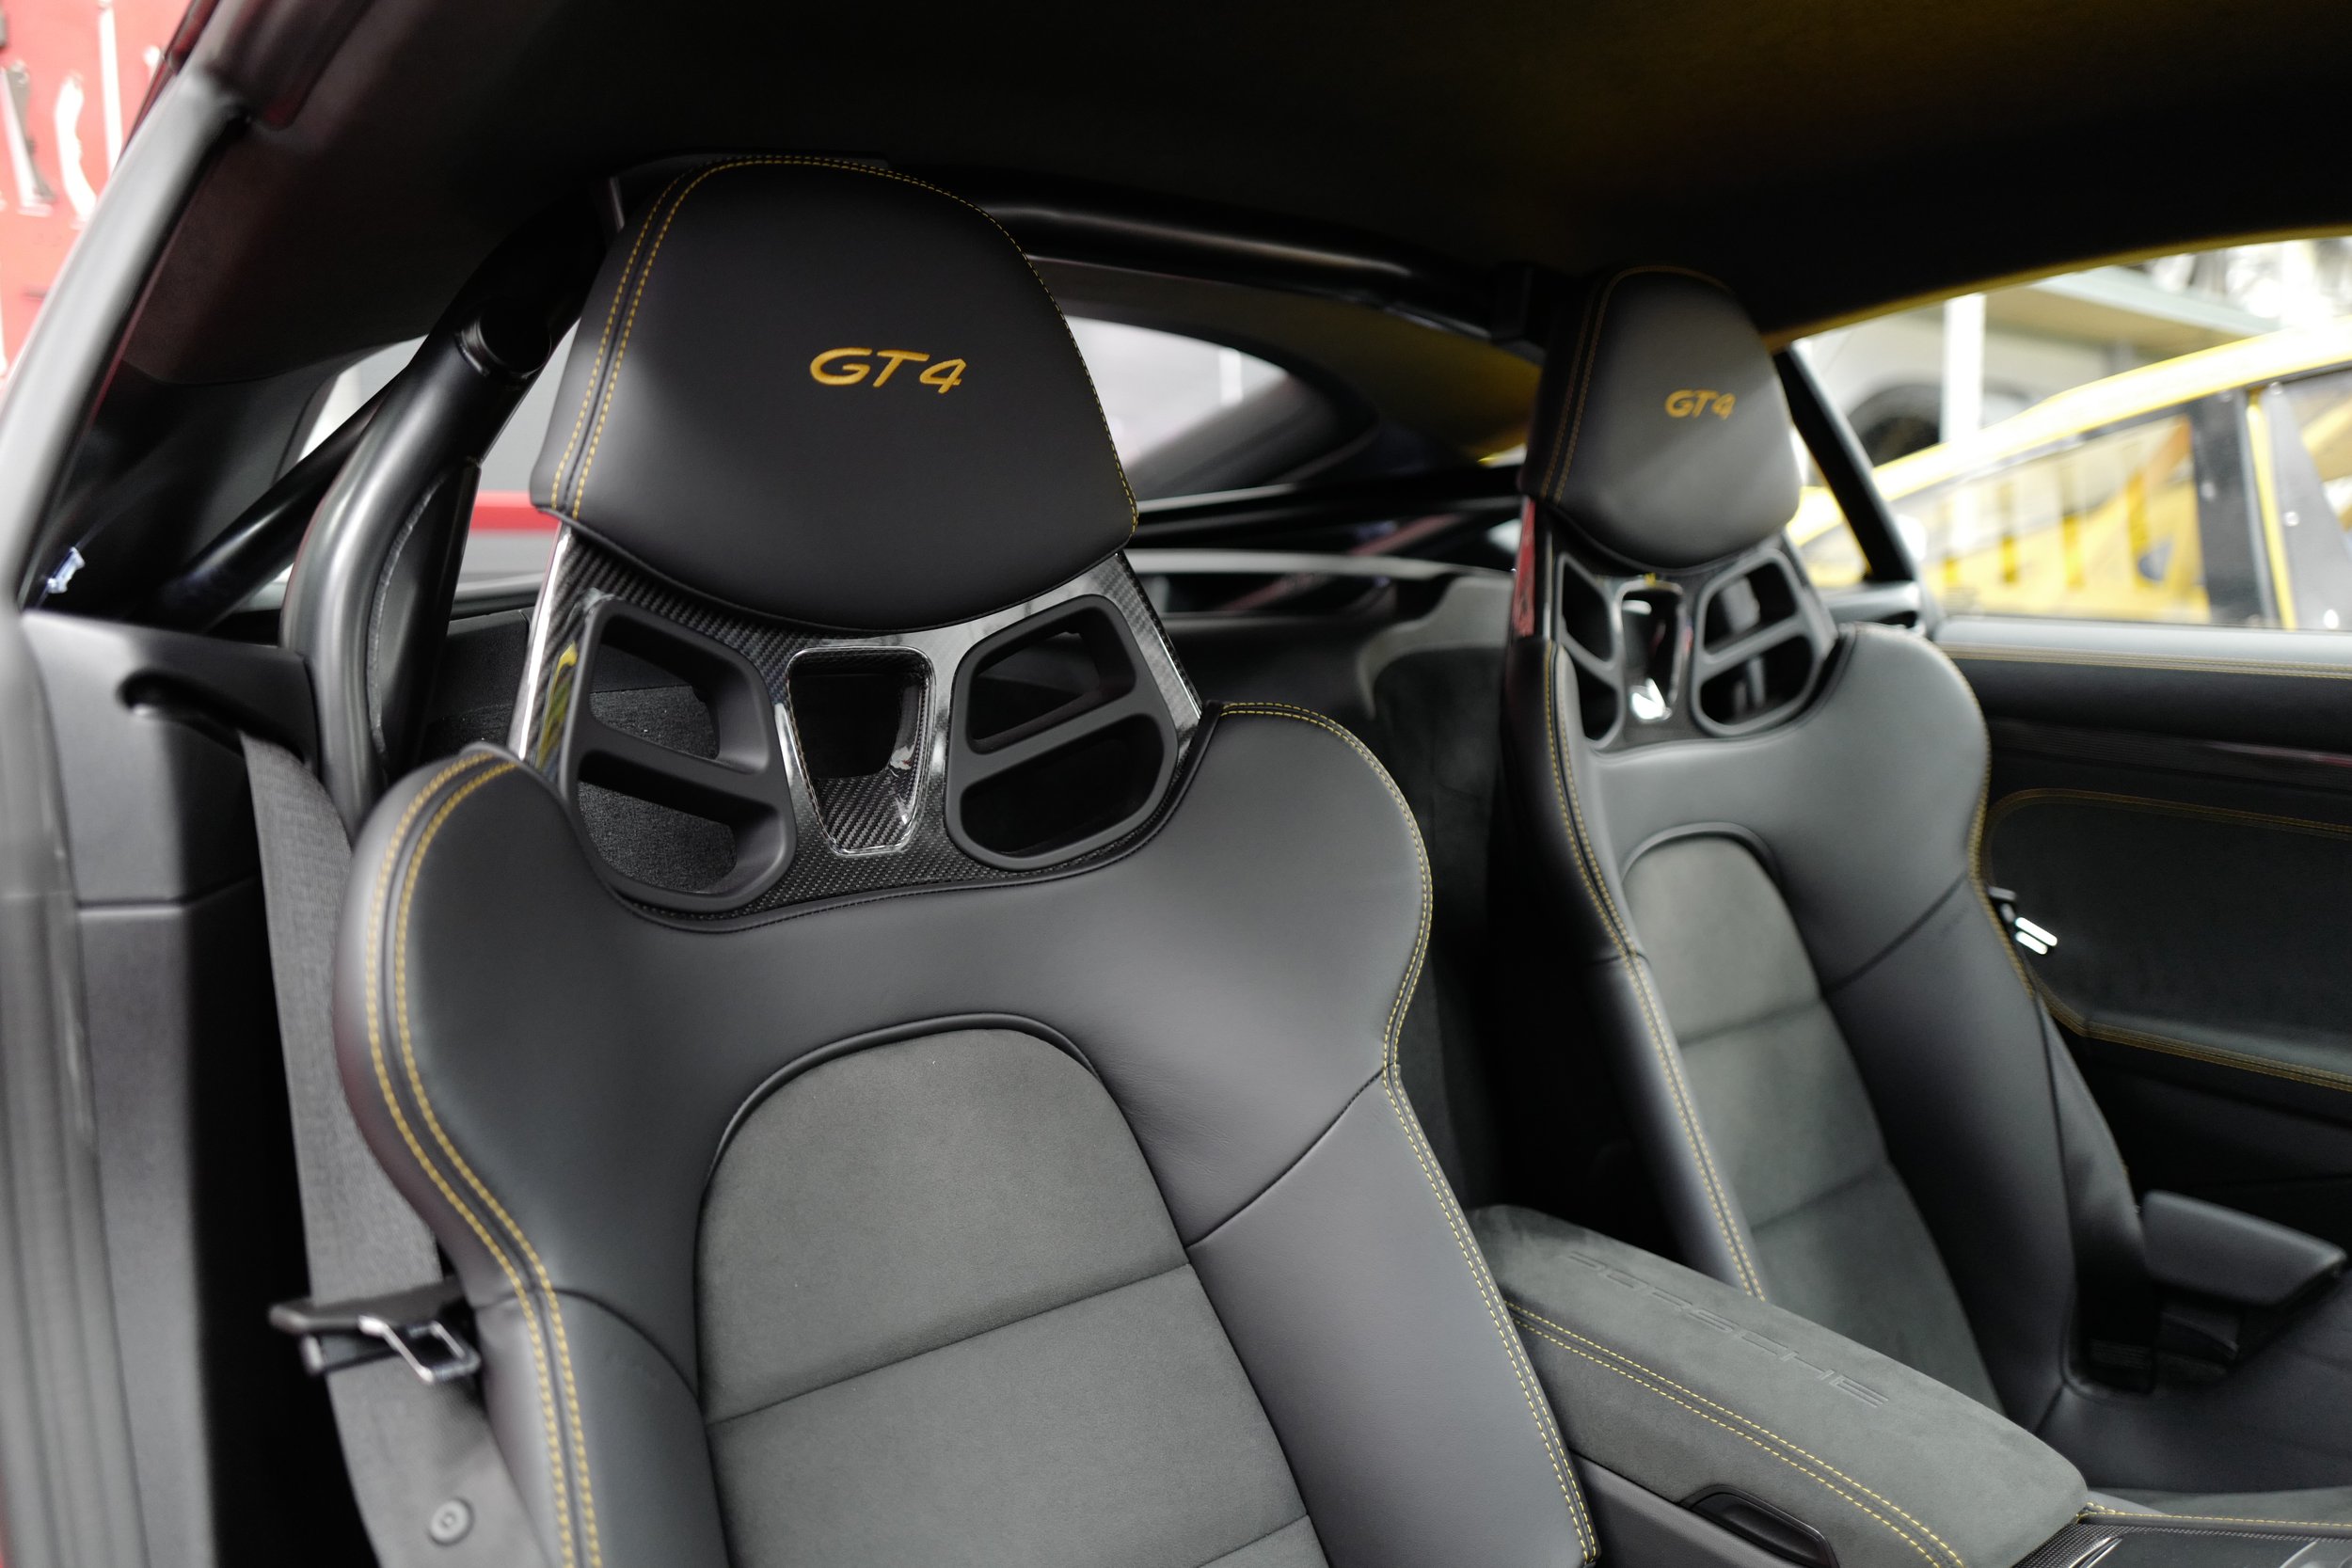 1.24 - GT4 Seats.JPG